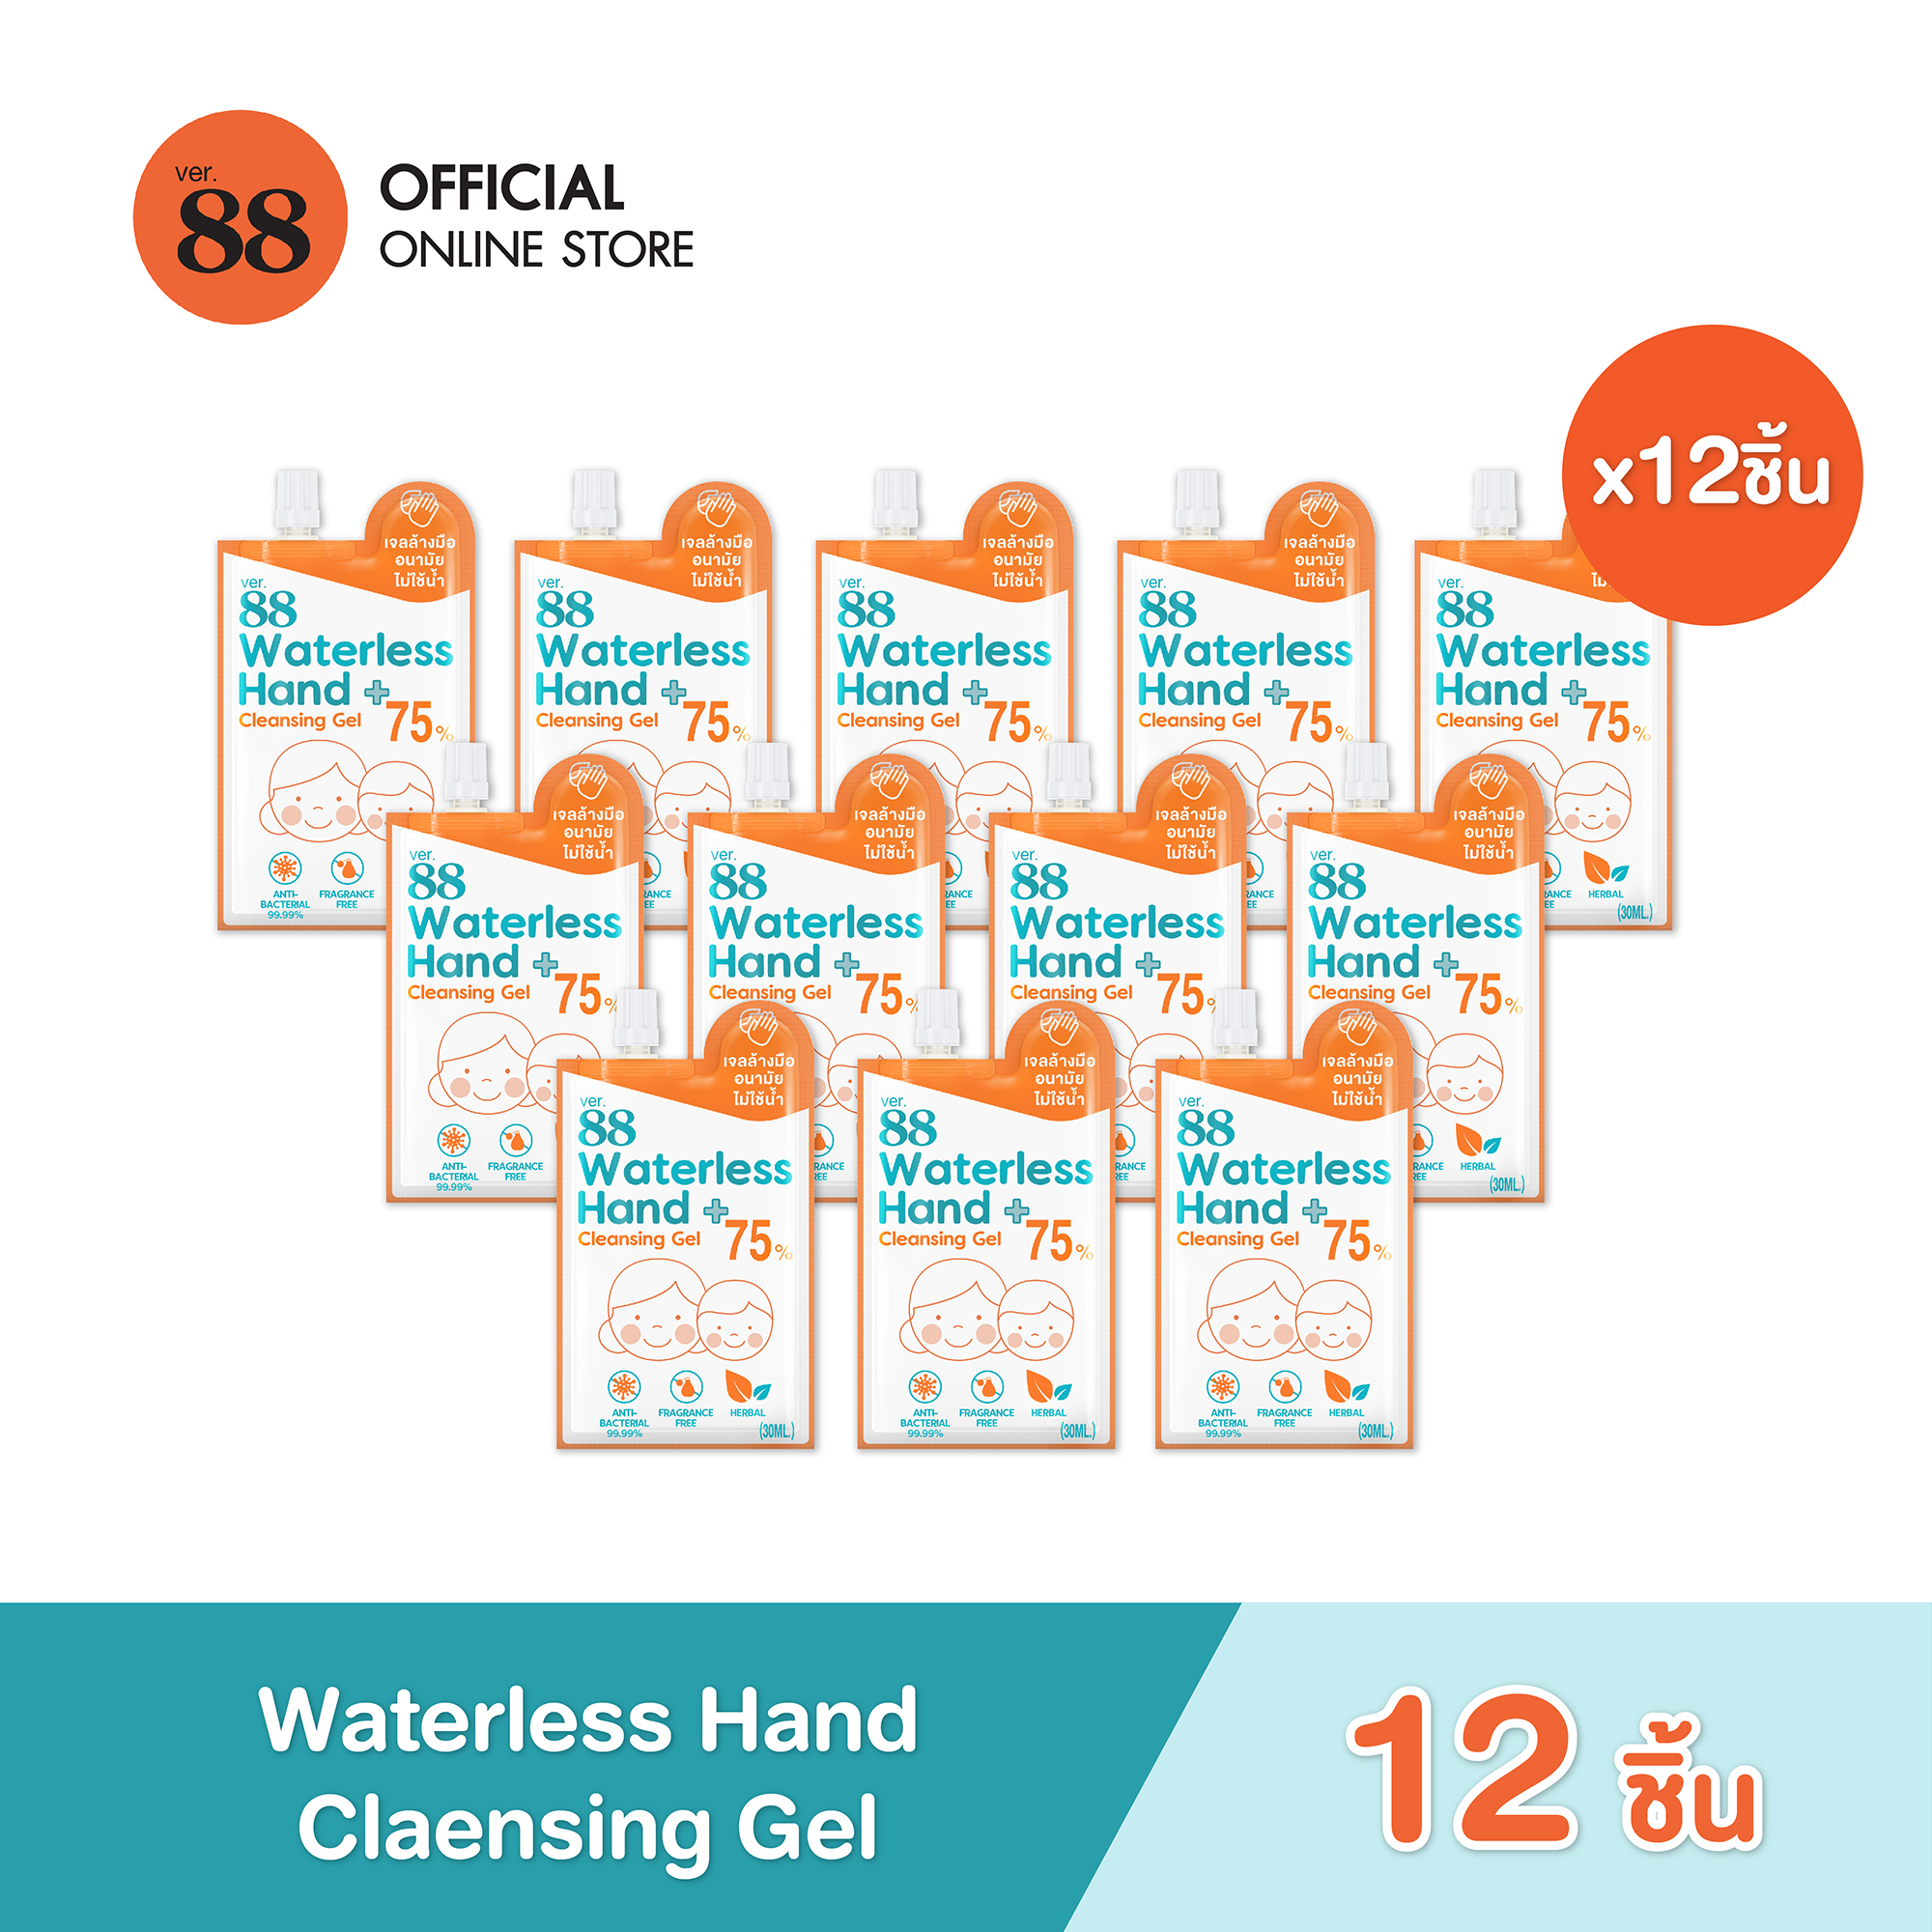 VER.88 WATERLESS HAND CLEANSING GEL (30 ML.)